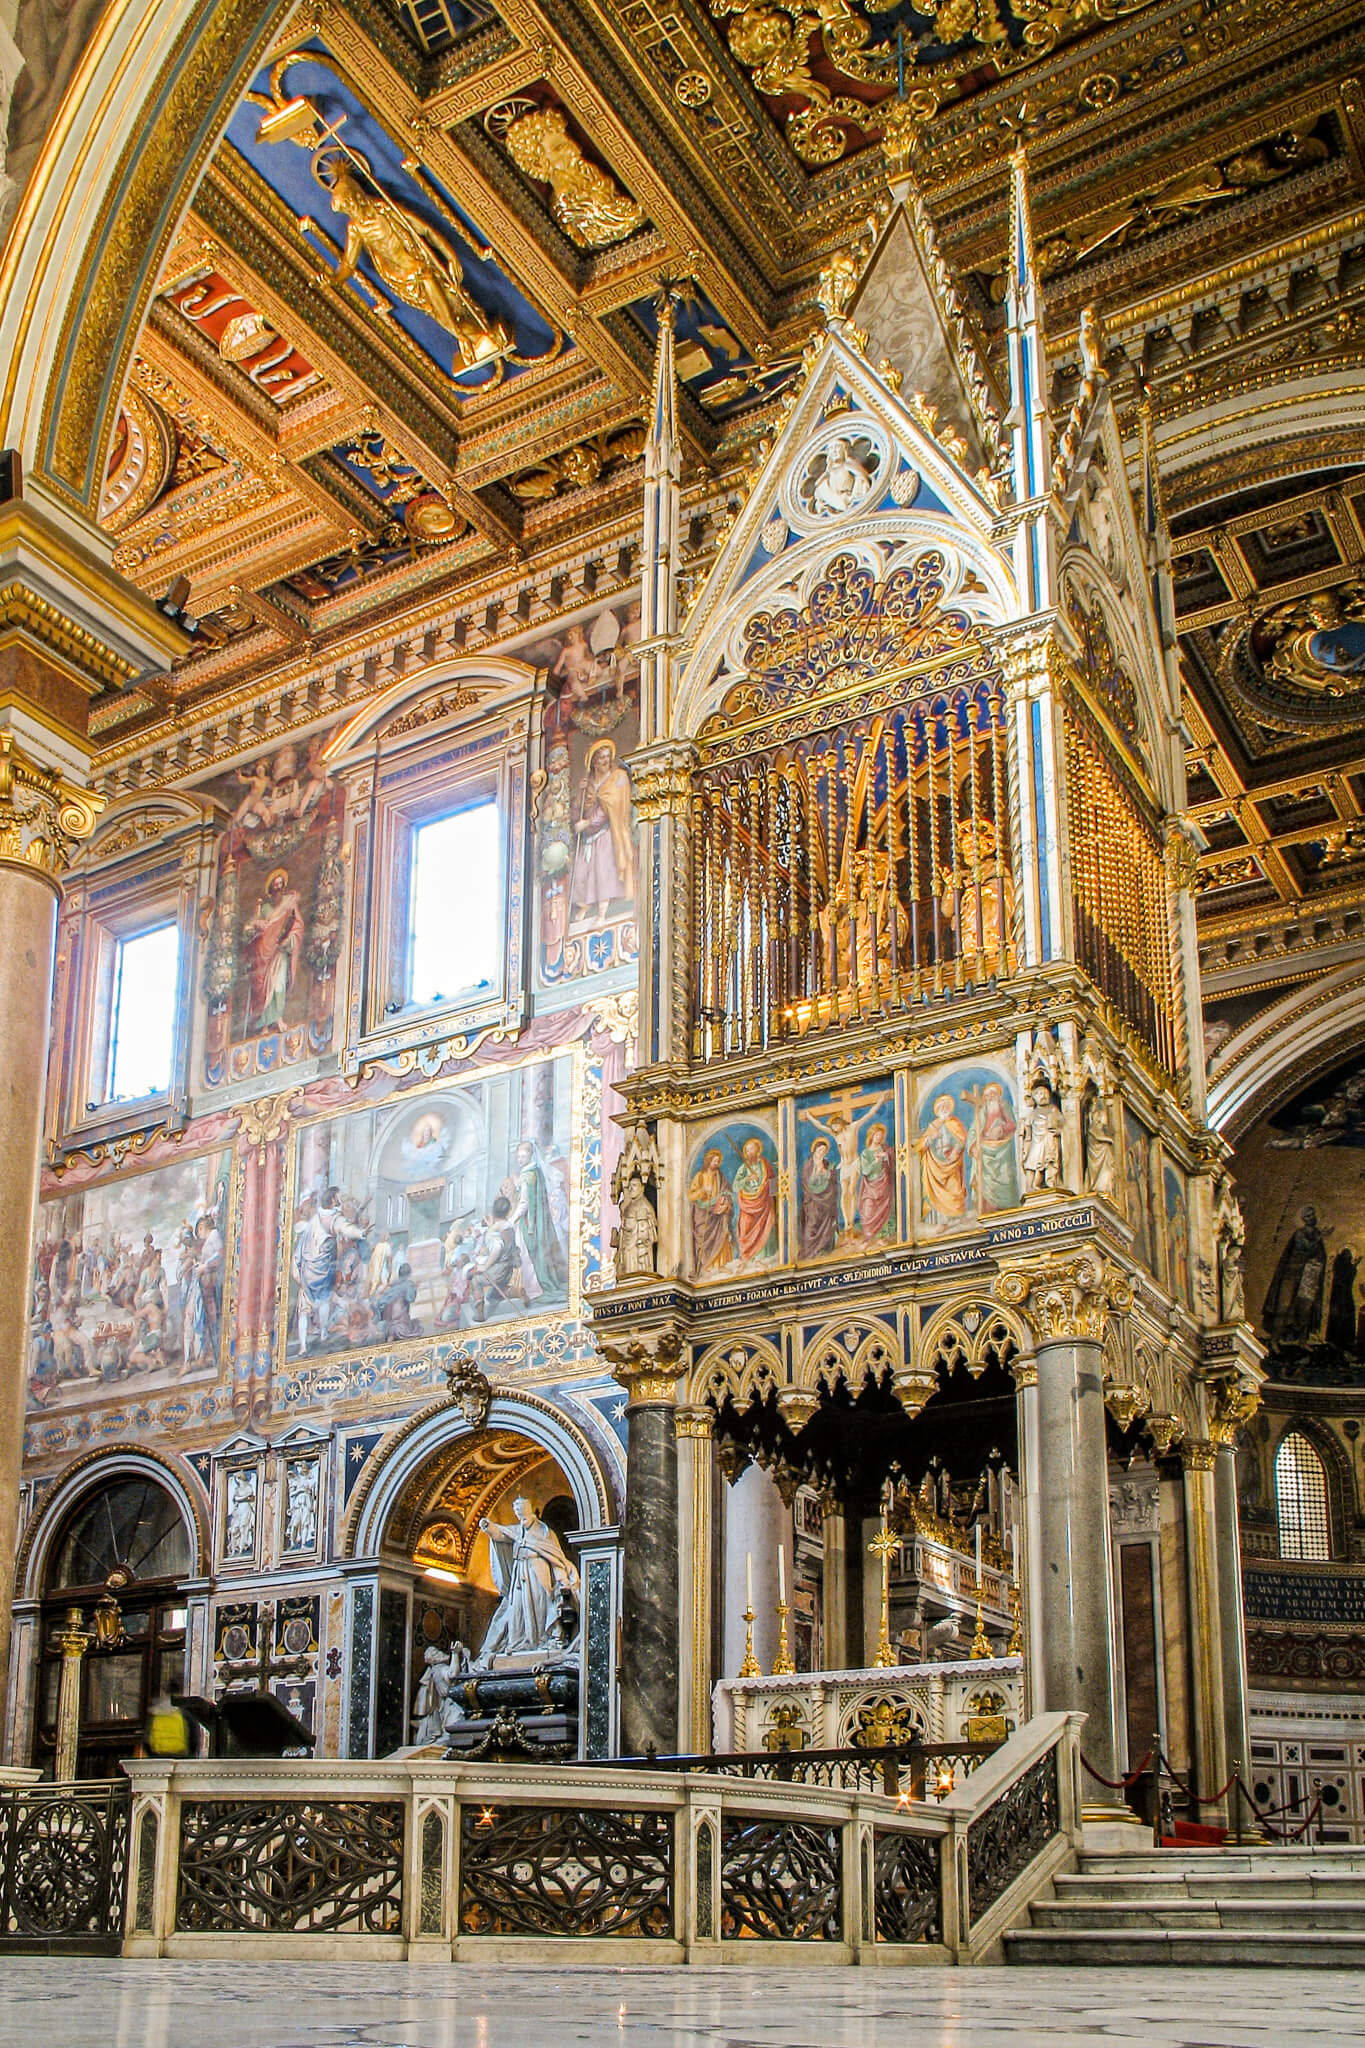 The ciborium of San Giovanni in Laterano